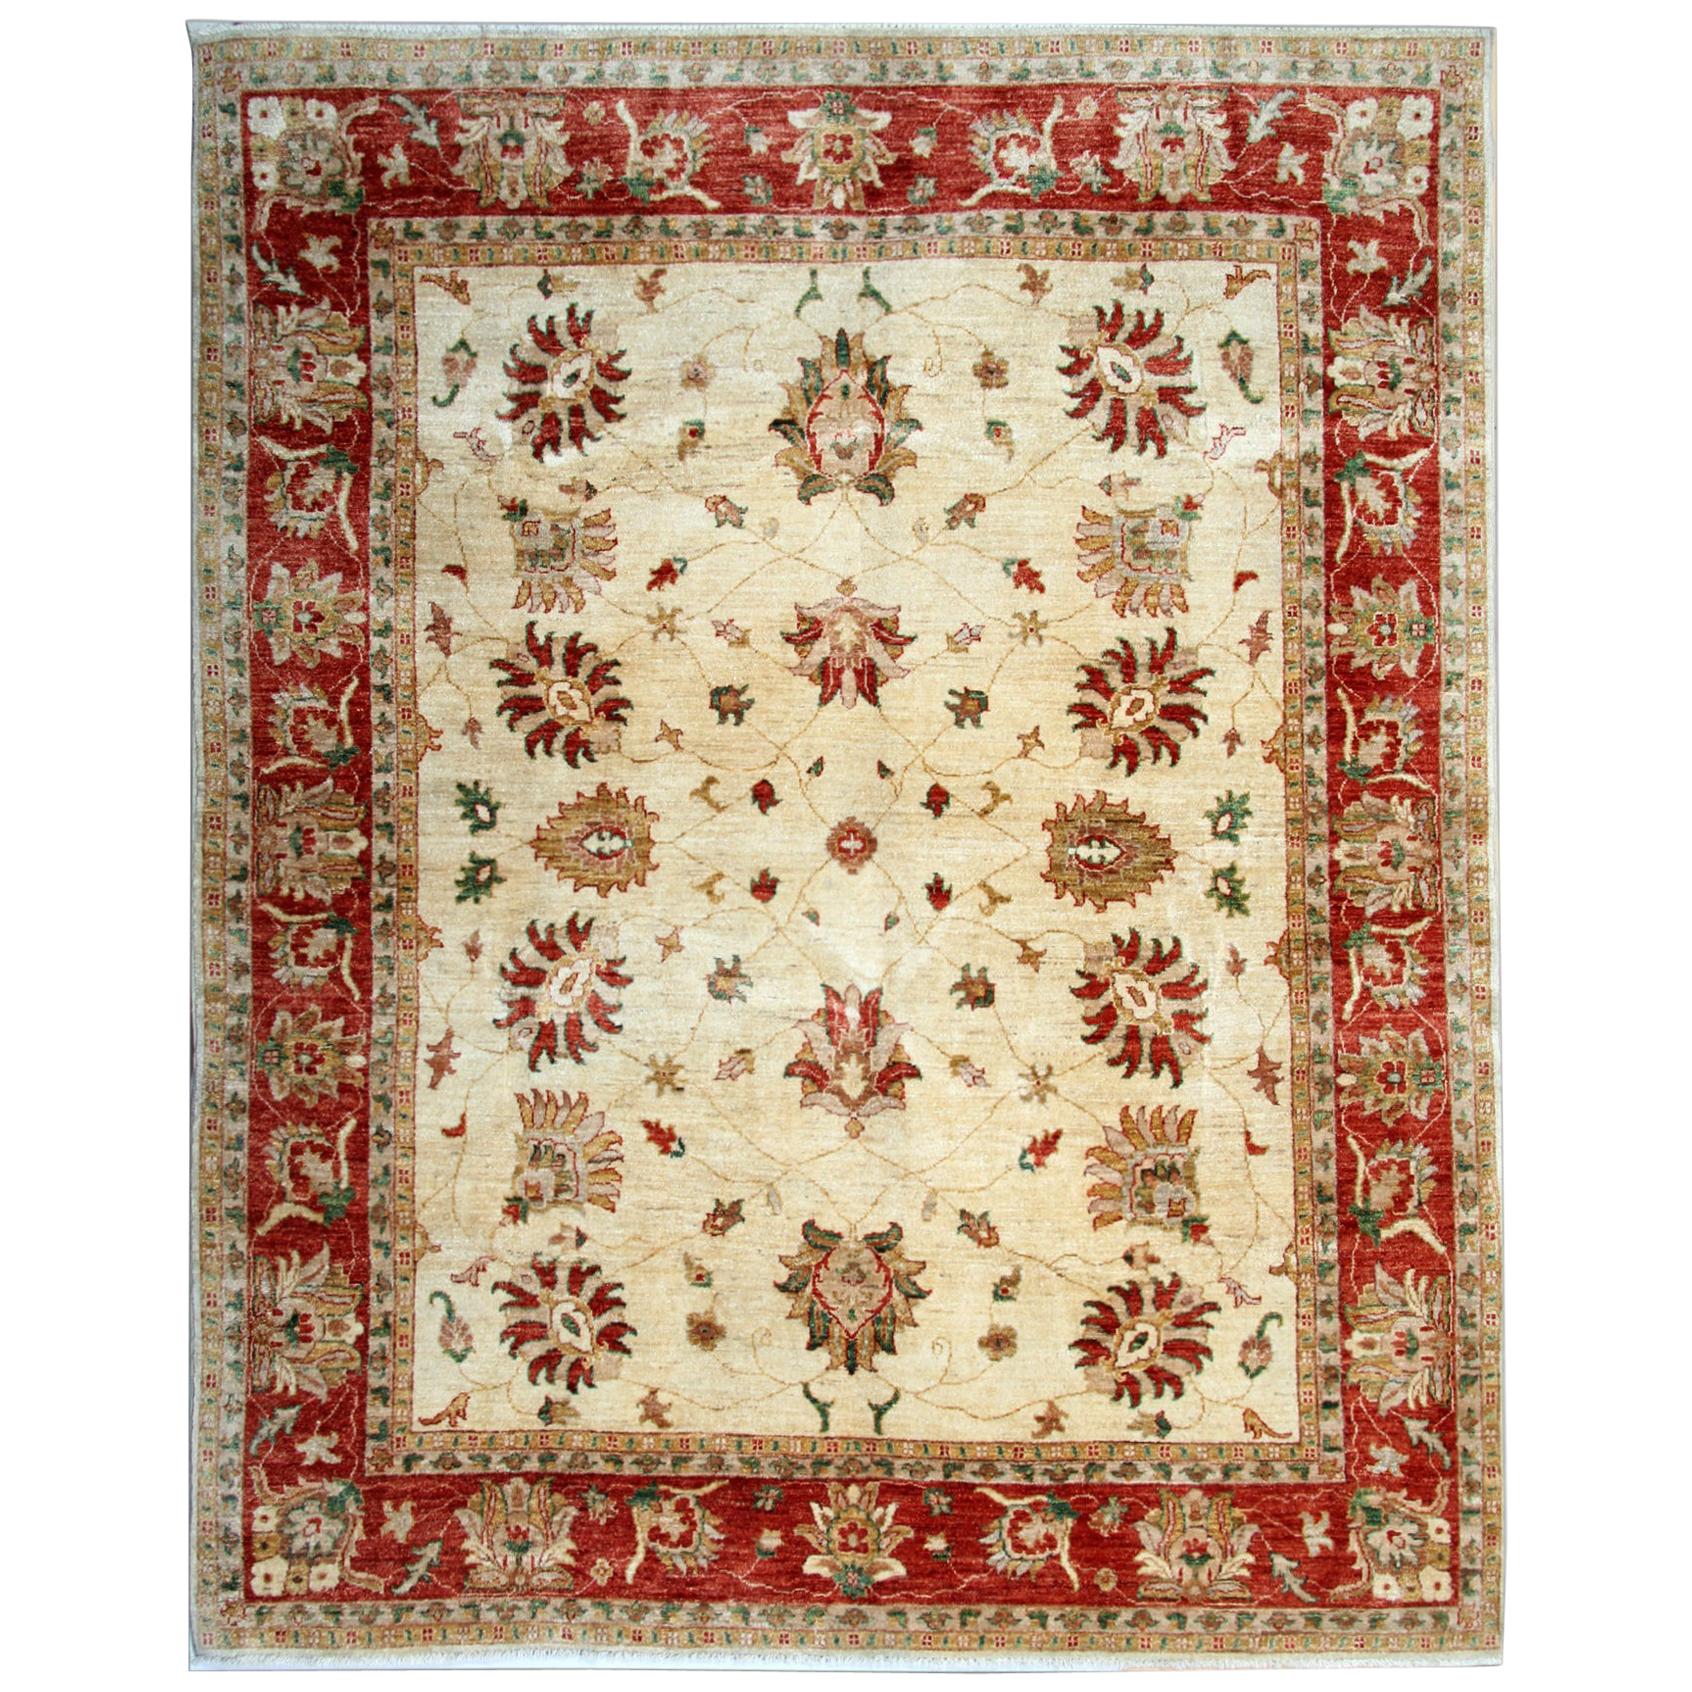 Handgefertigter Teppich im Ziegler-Stil mit Blumenmuster